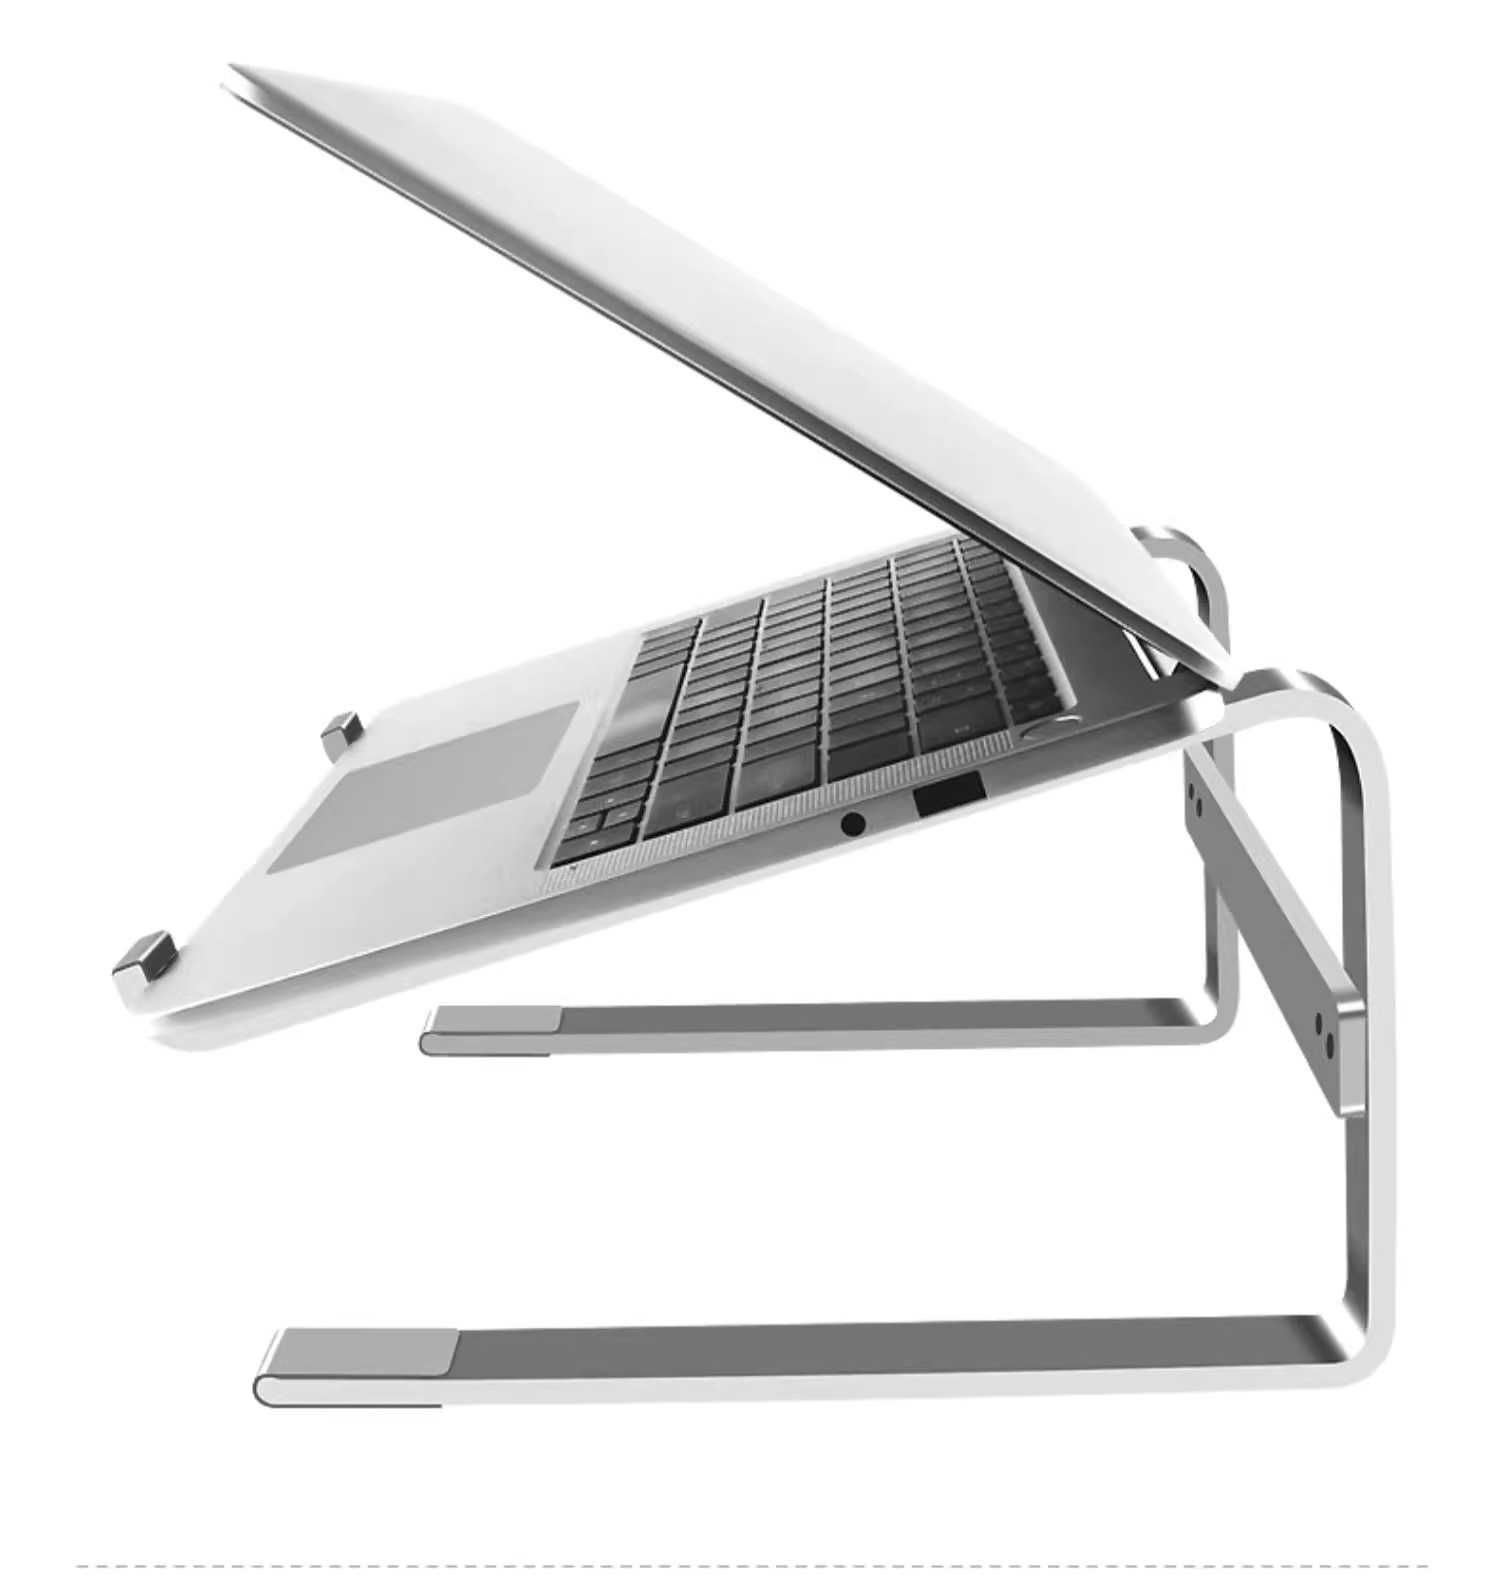 Висока підставка під ноутбук металева алюмінієва Aluminum Laptop Stand